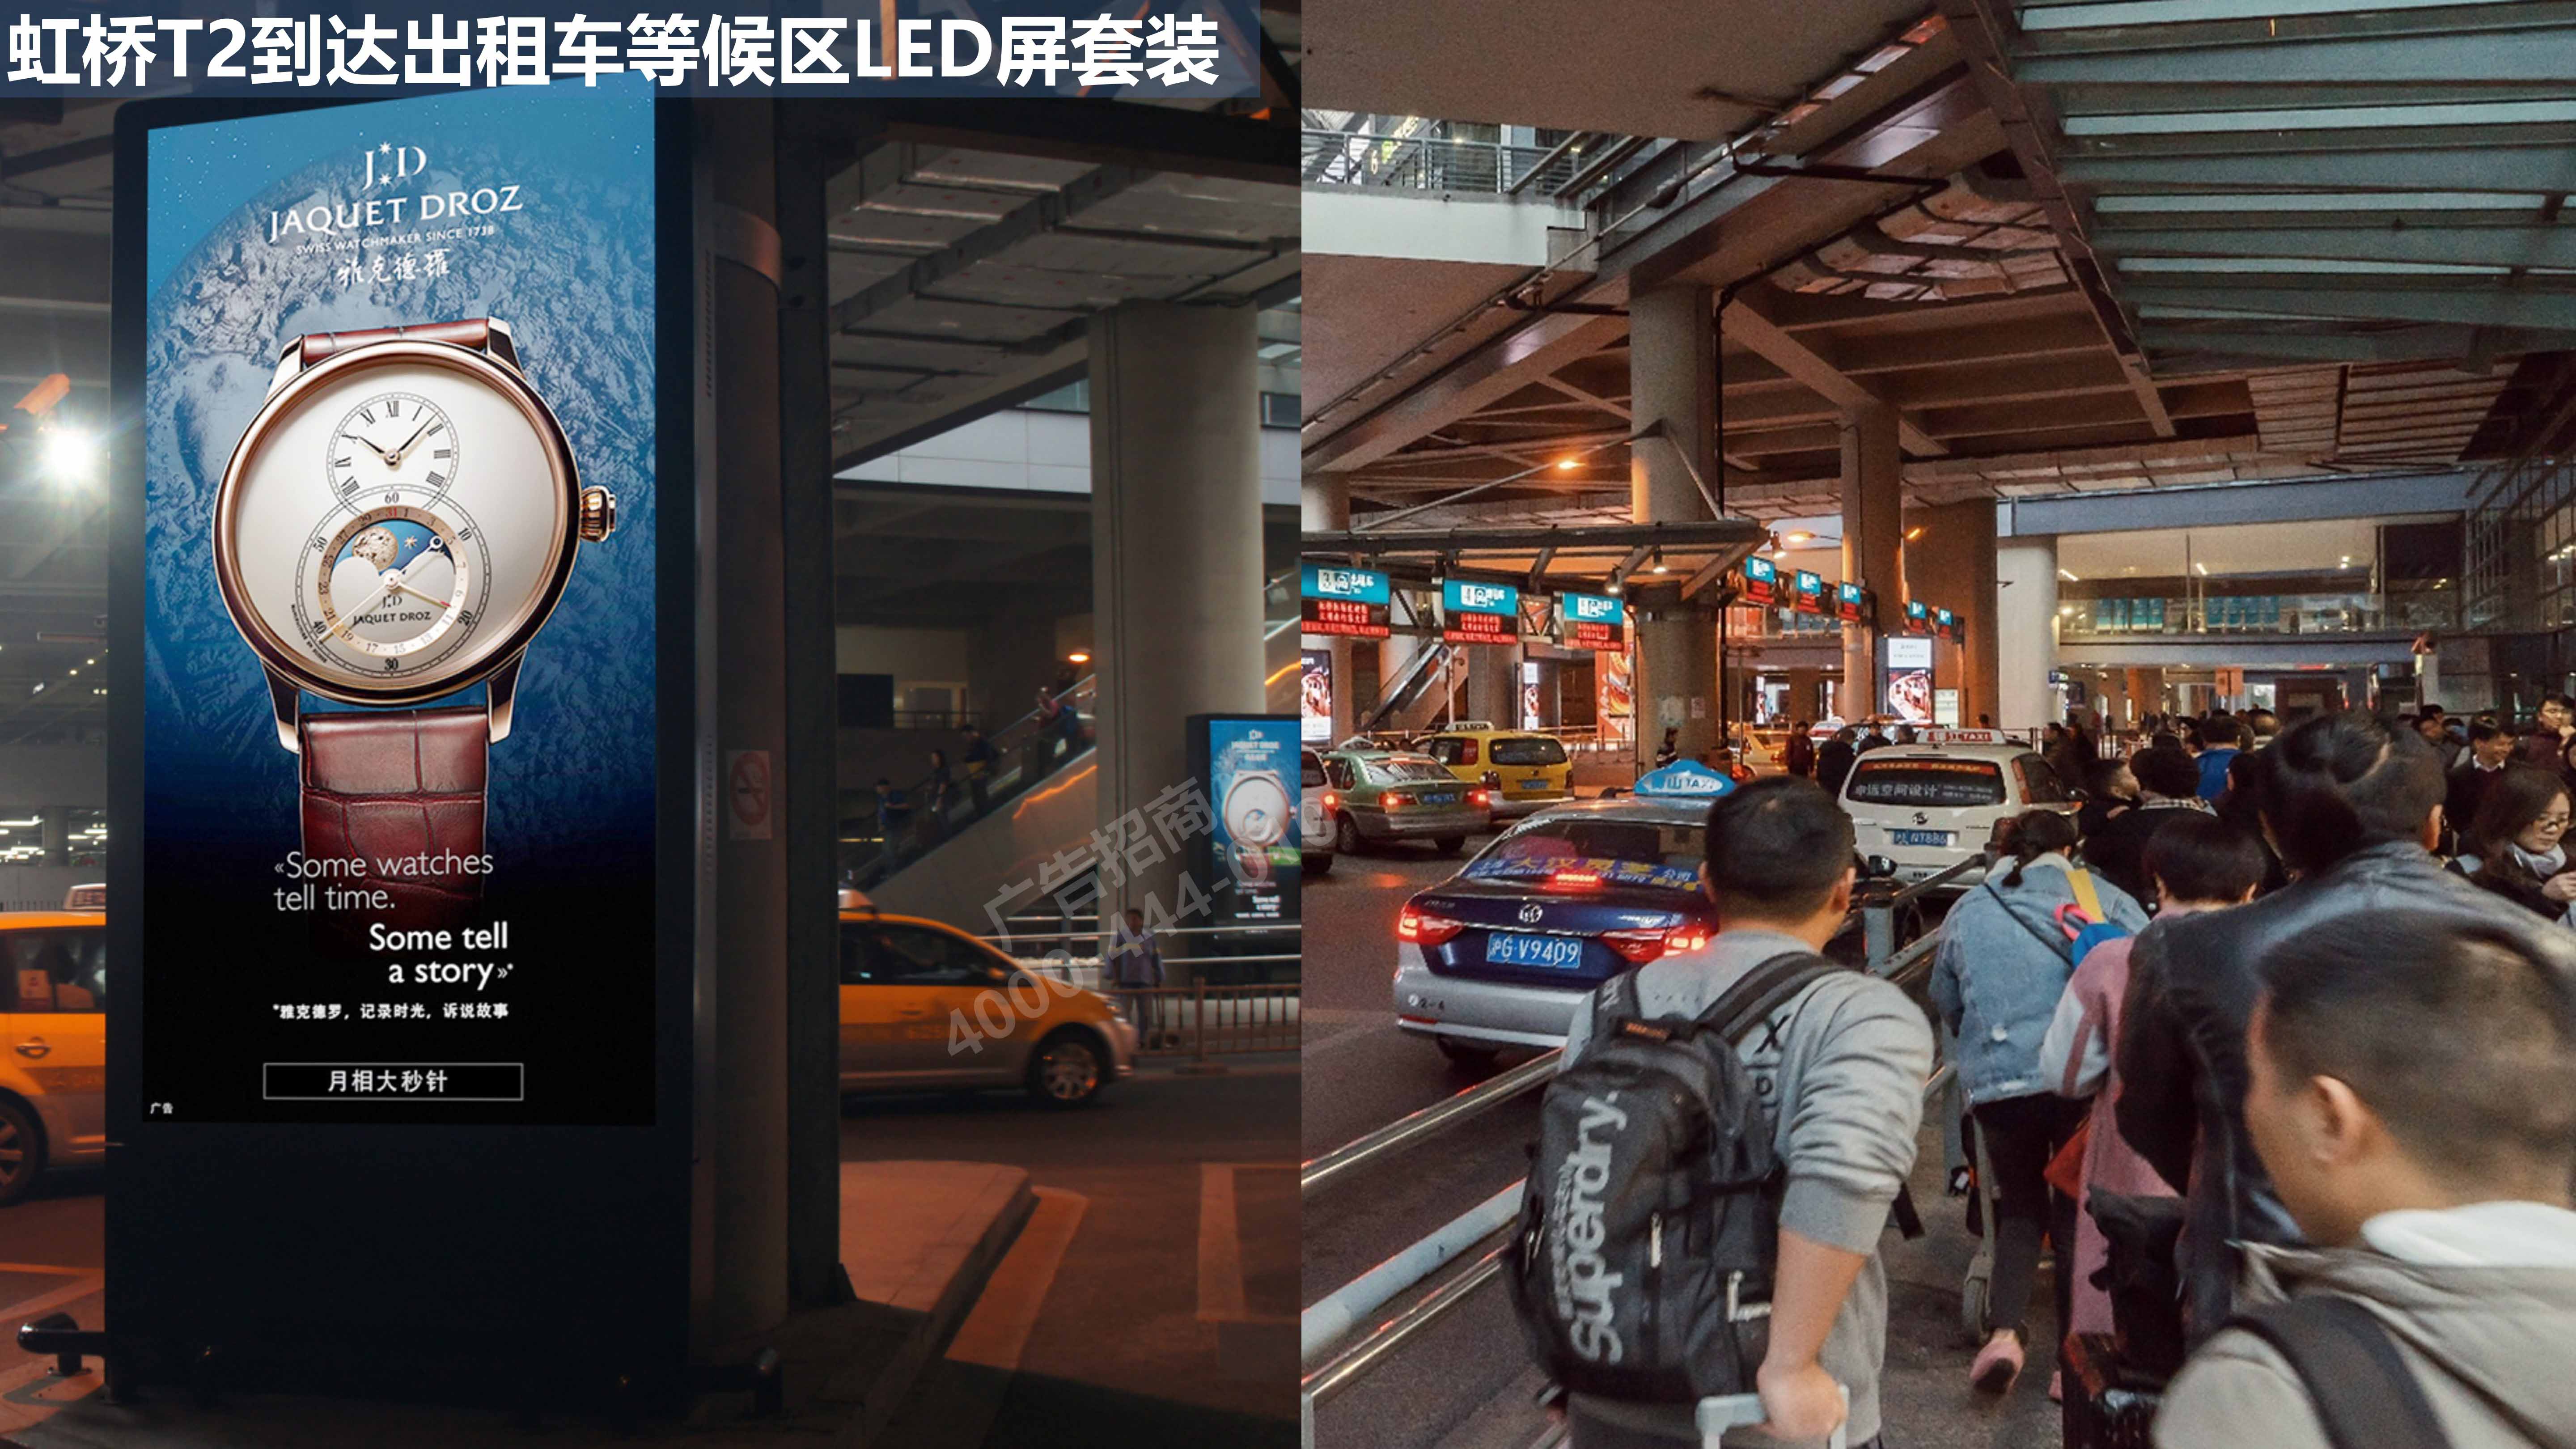 上海机场出租车等候区广告